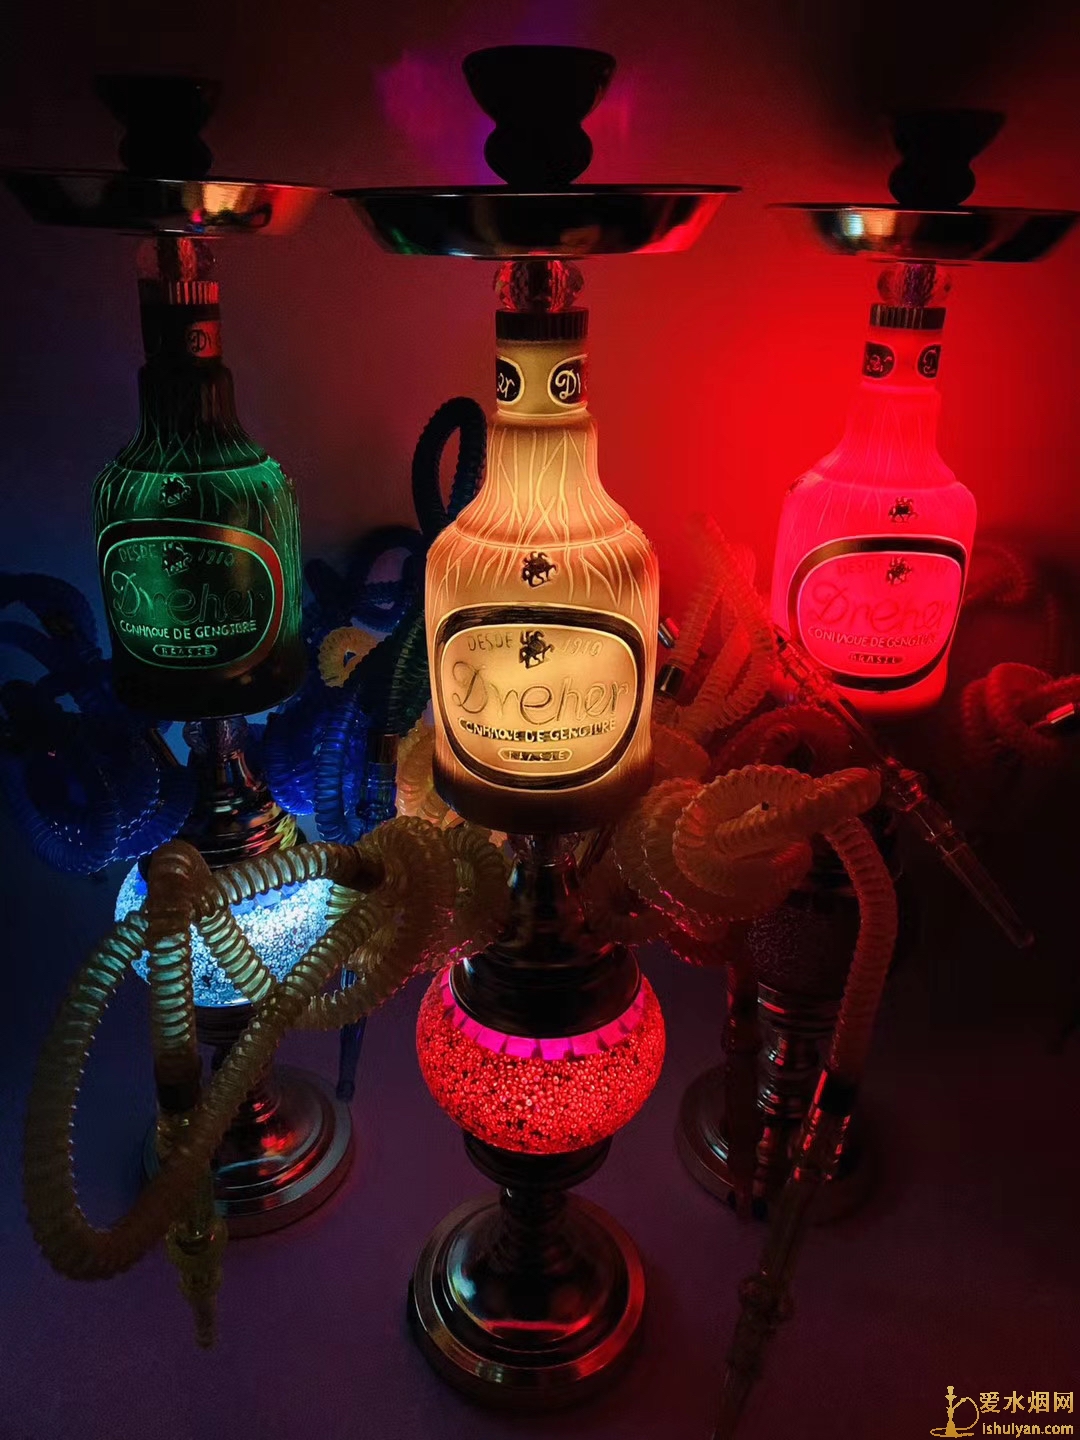 酒吧水烟壶之酒瓶造型双灯四嘴阿拉伯水烟壶图片价格批发多少钱